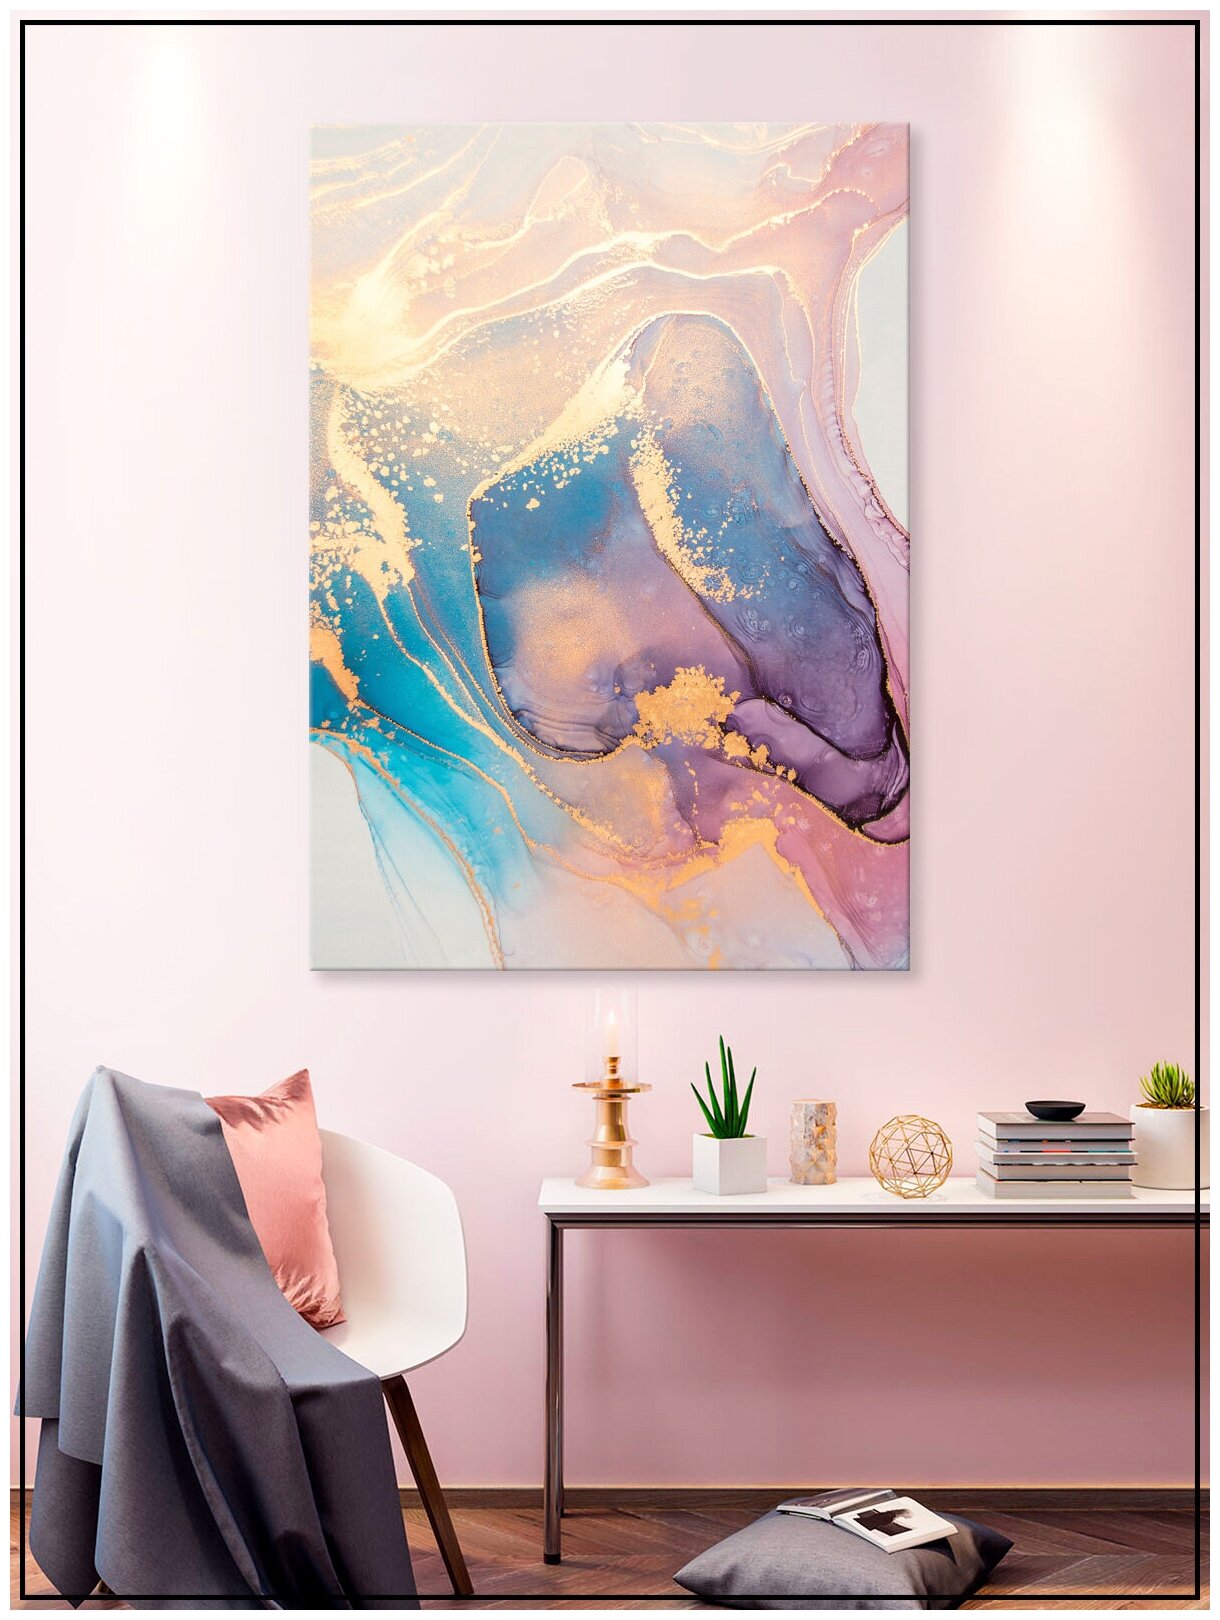 Картина для интерьера на натуральном хлопковом холсте "Разноцветная абстракция", 30*40см, холст на подрамнике, картина в подарок для дома